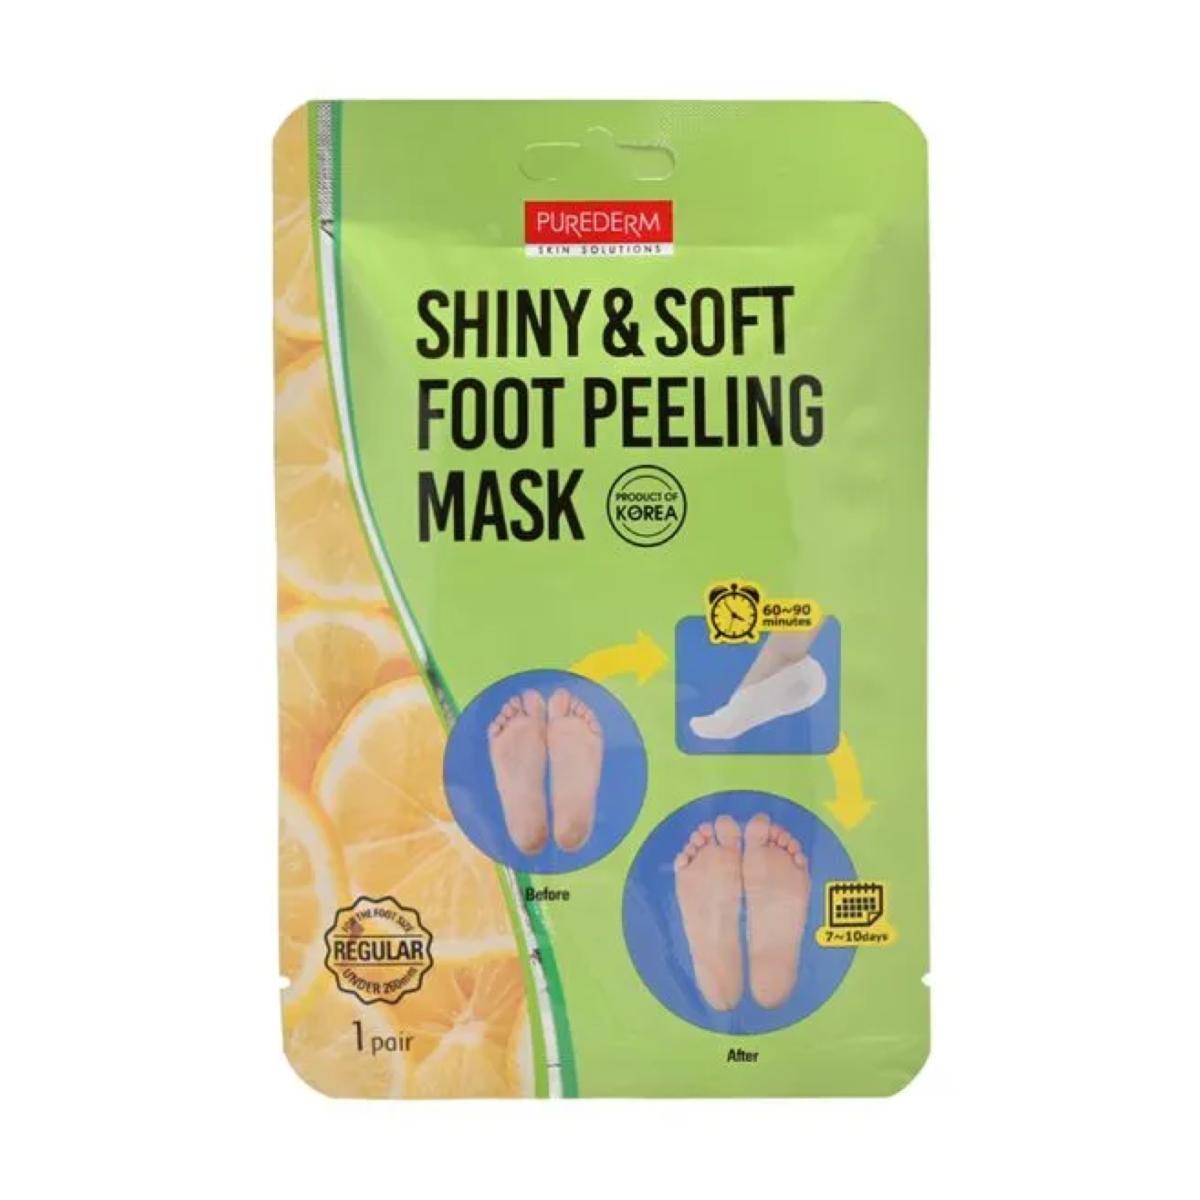 ماسک لایه بردار پا - shiny and soft foot peeling